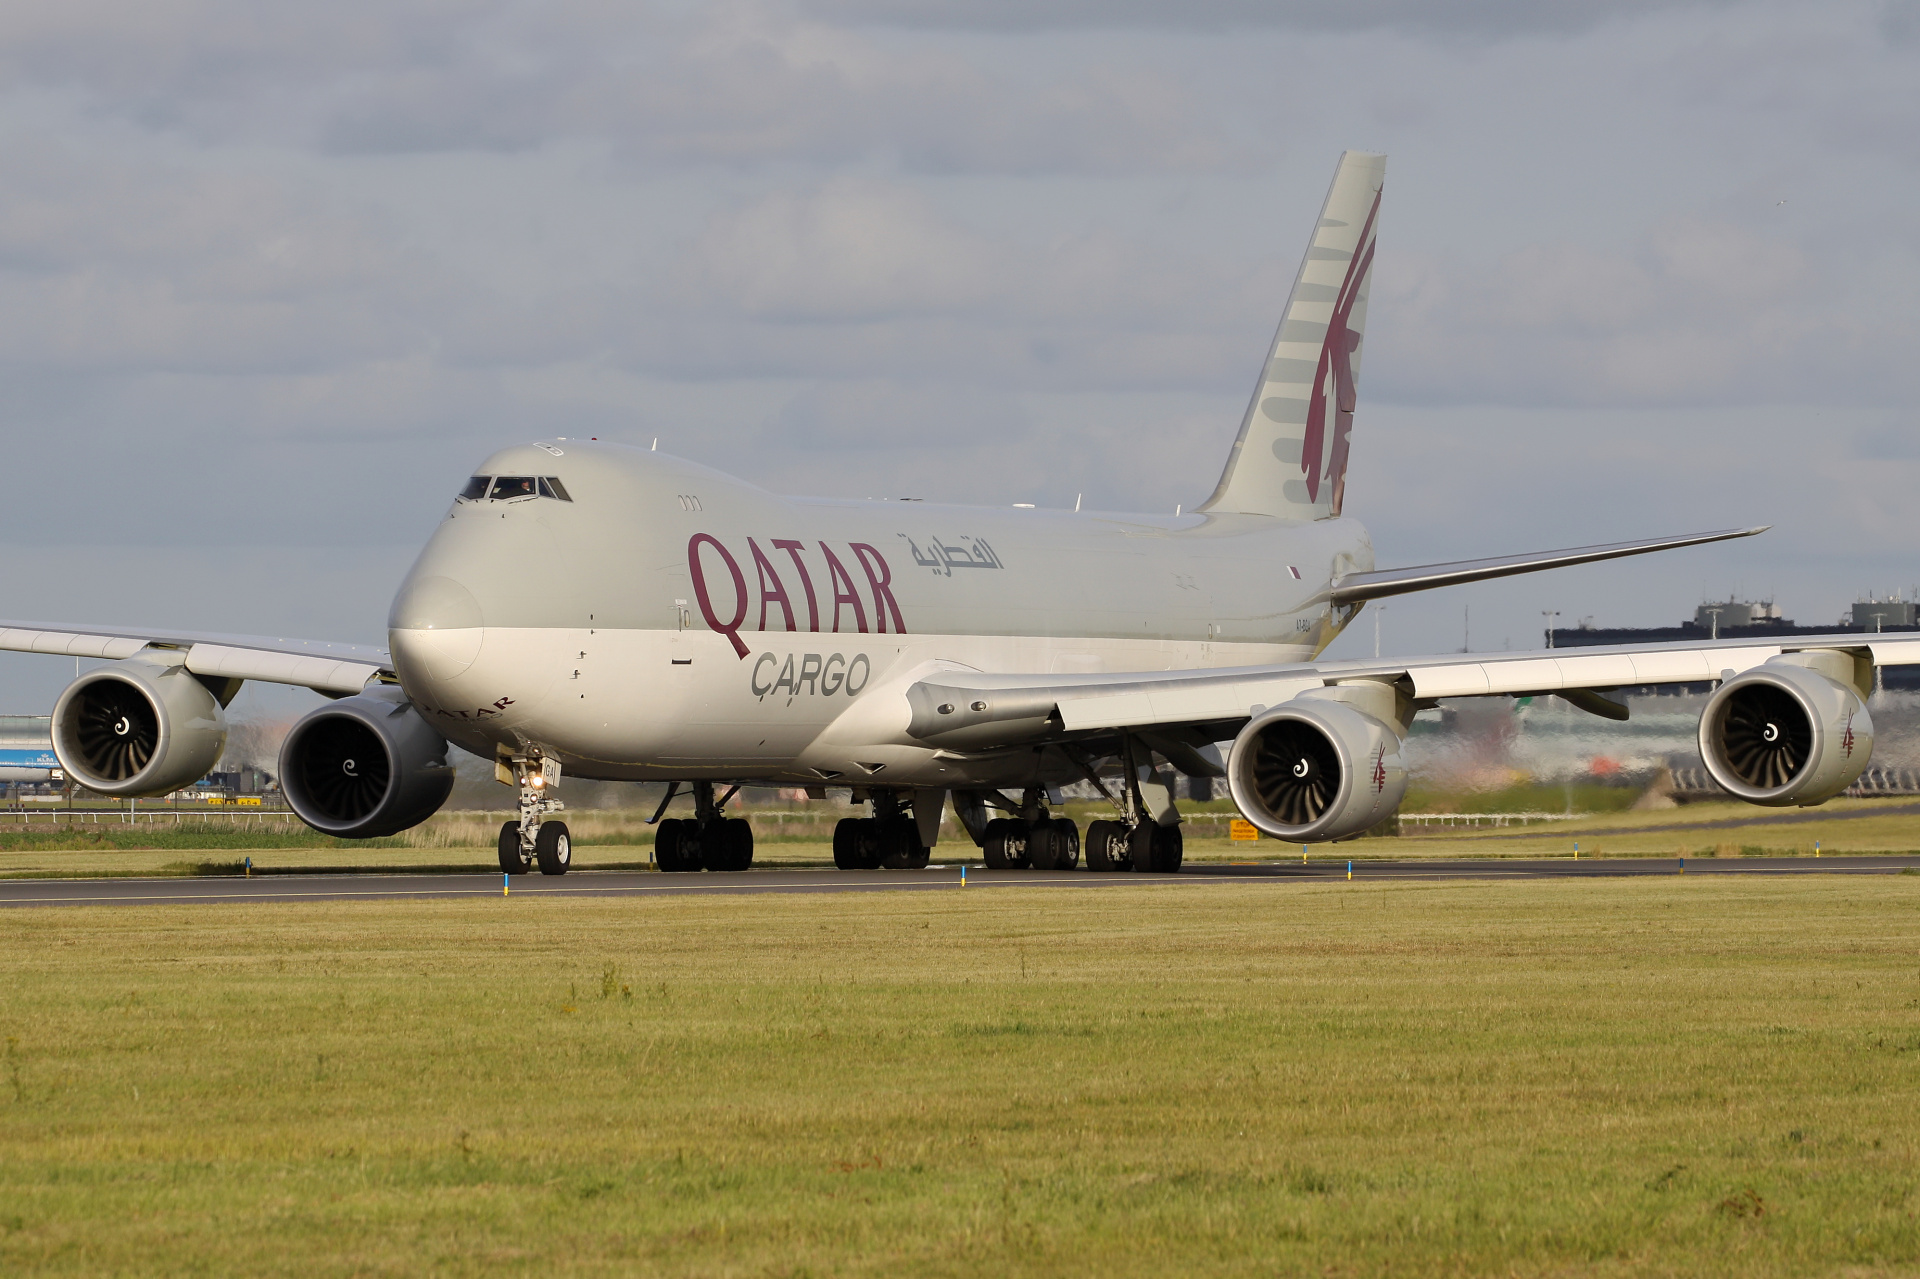 A7-BGA, Qatar Airways Cargo (Samoloty » Spotting na Schiphol » Boeing 747-8F)